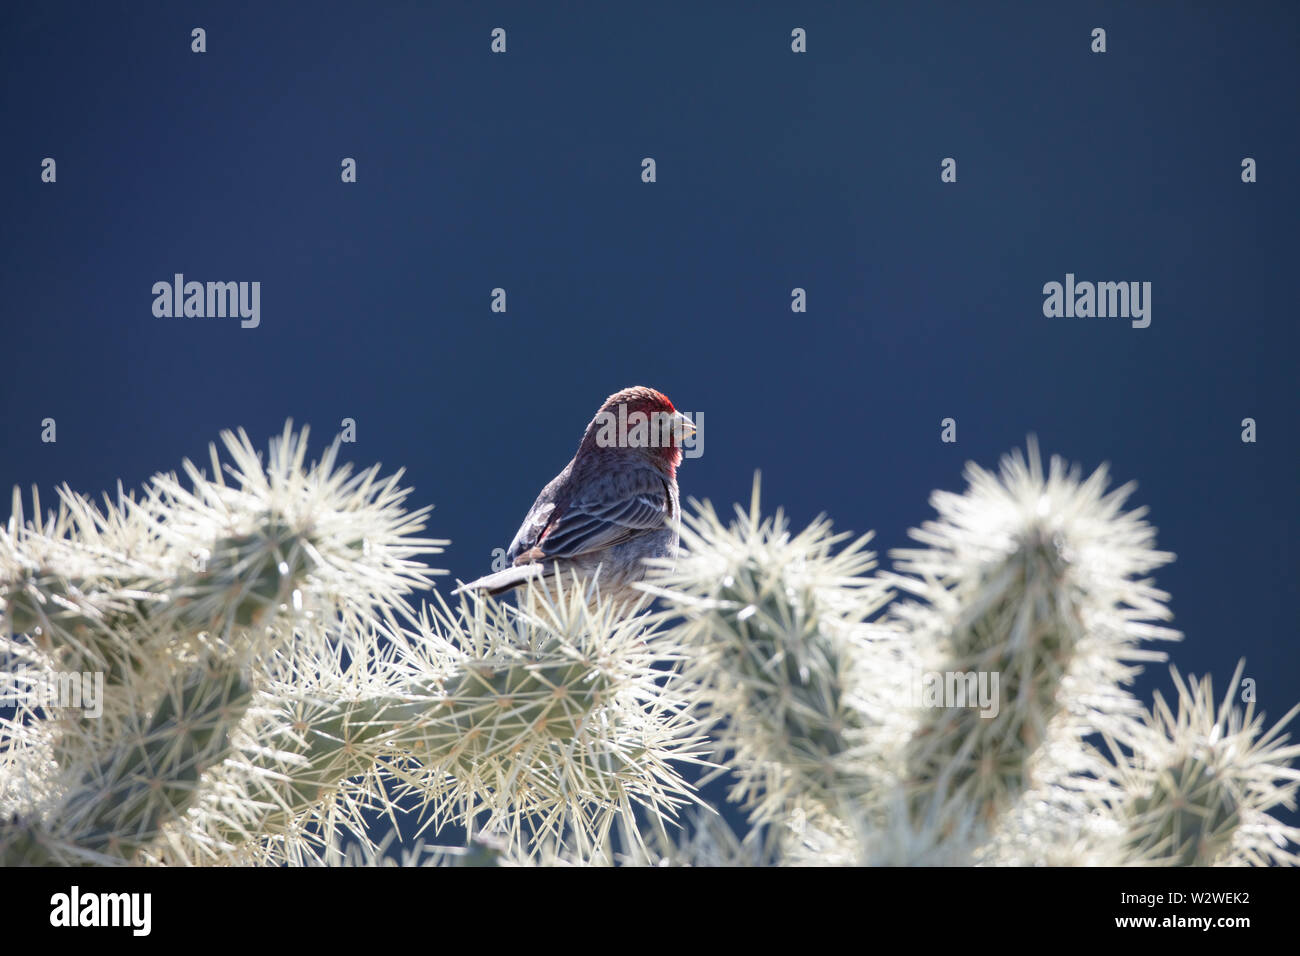 Una casa finch (Haemorhous mexicanus) se sitúa en la cholla cactus en el desierto de Arizona Foto de stock